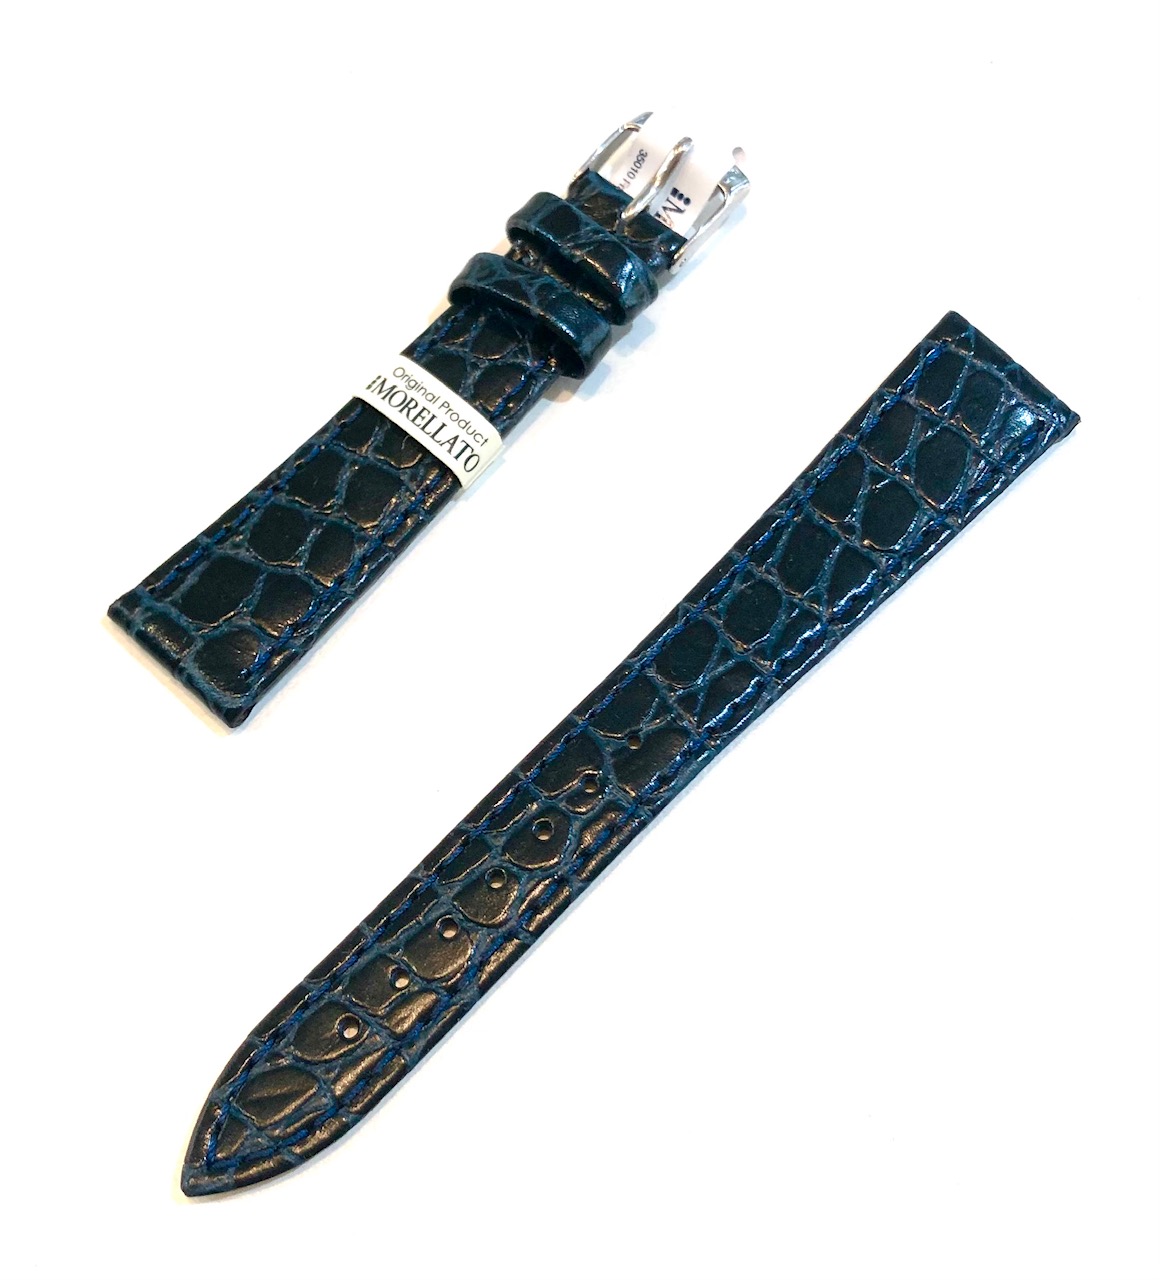  Bracelet de montre homme Morellato en cuir imprimé crocodile 